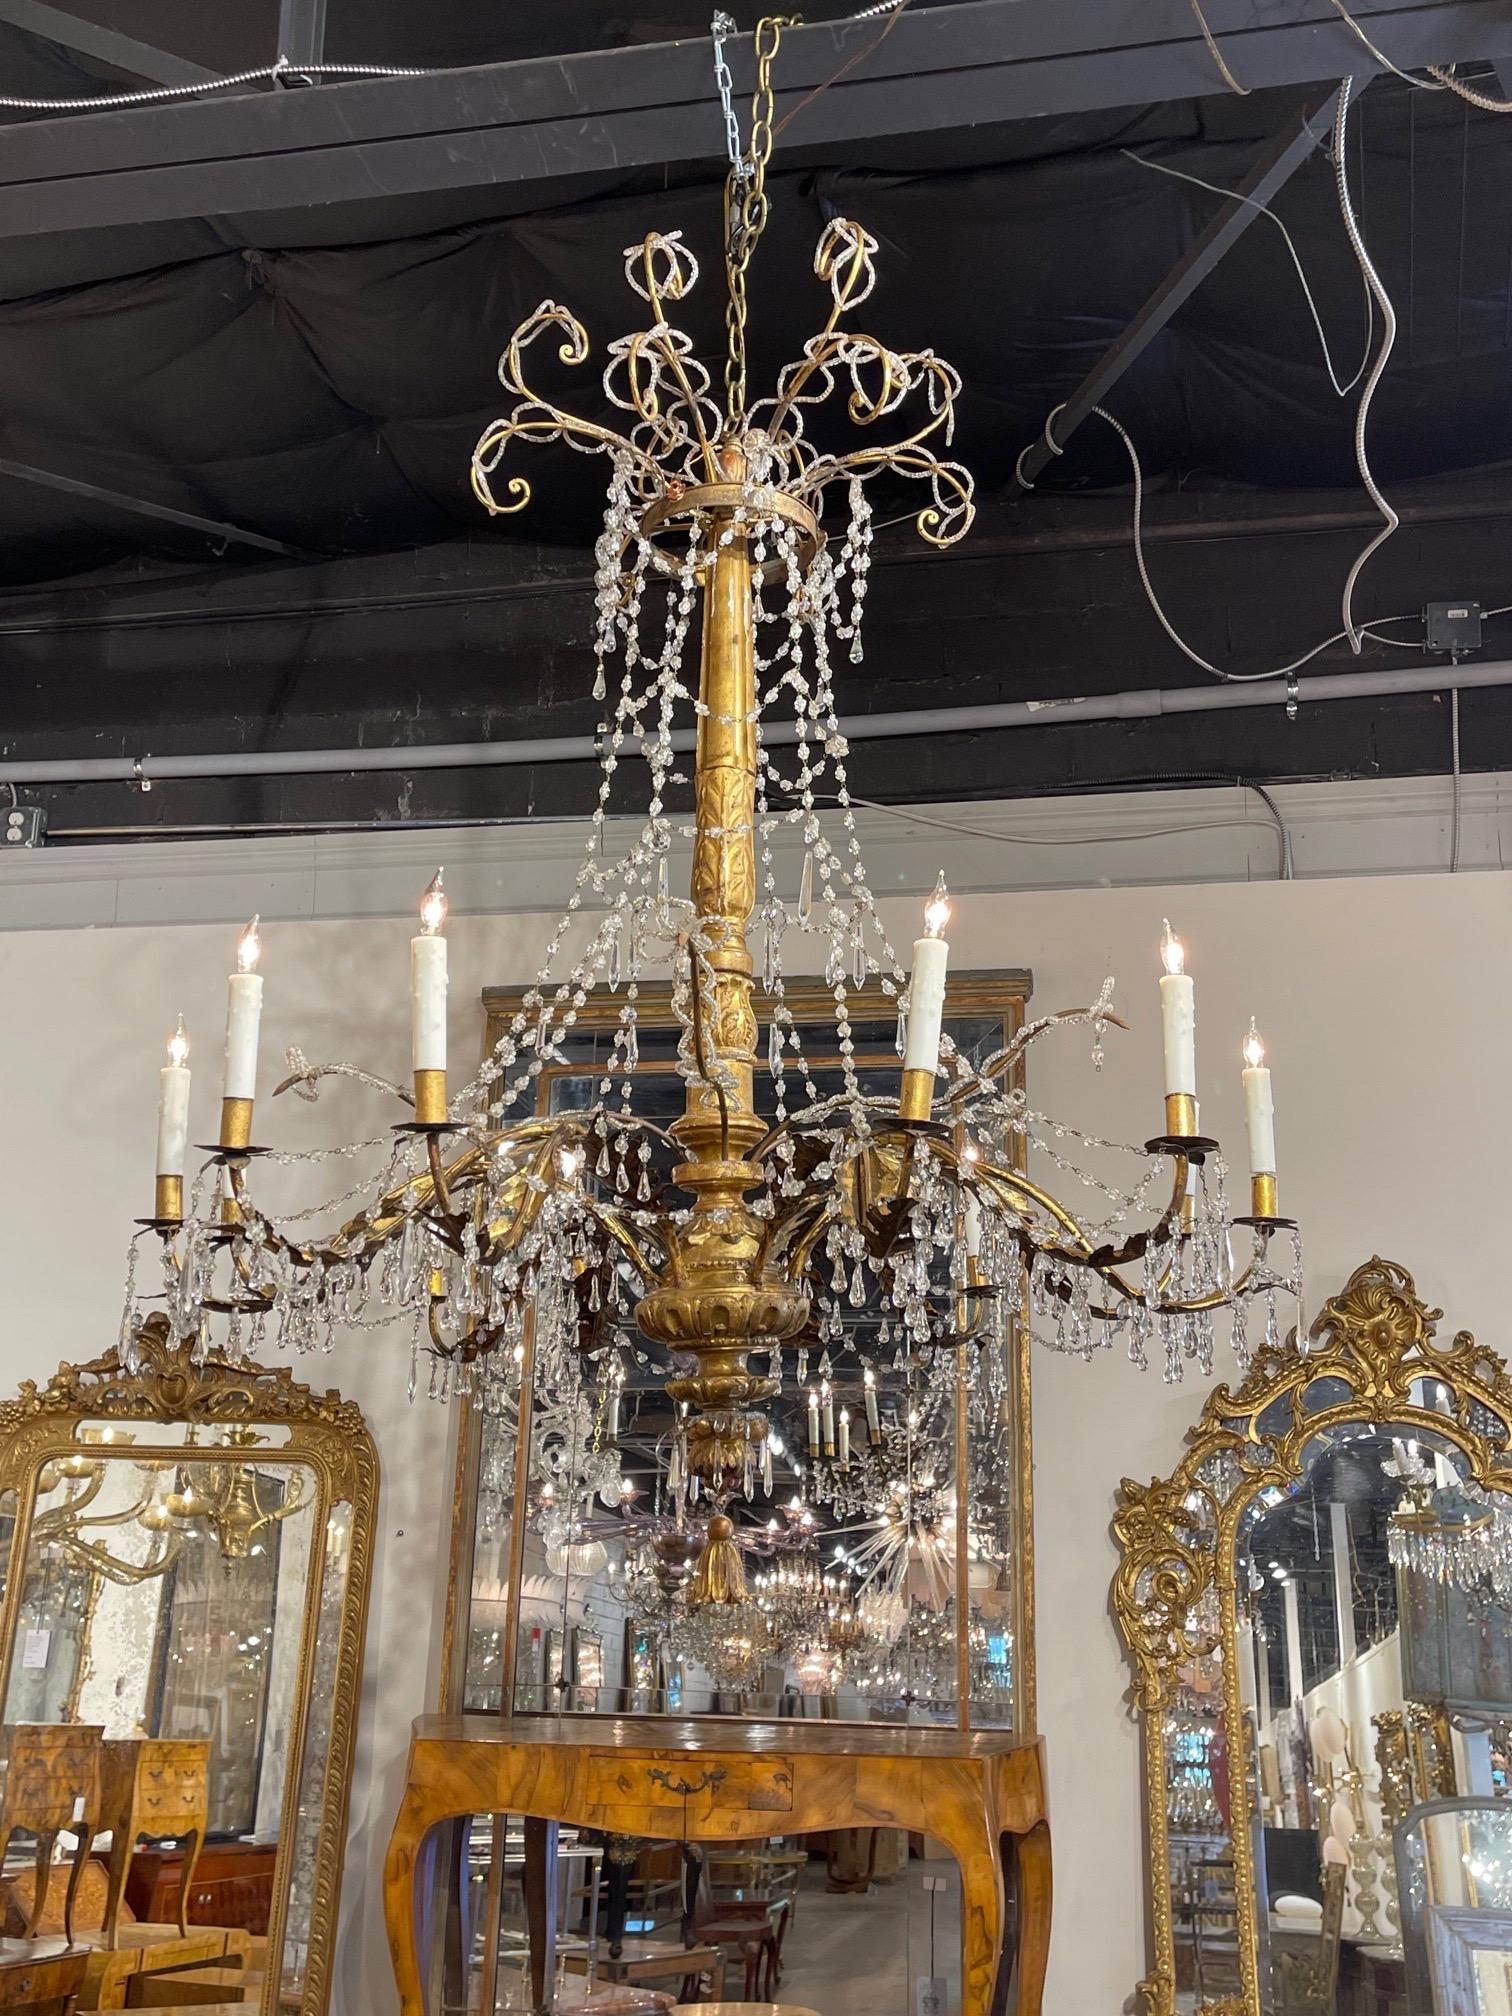 Très beau lustre italien du XVIIIe siècle, de grande taille, en bois doré et cristal perlé, avec 18 lumières. Belle base sculptée et jolis cristaux pendants. Crée une agréable sensation de lumière et d'air. Impressionnant !